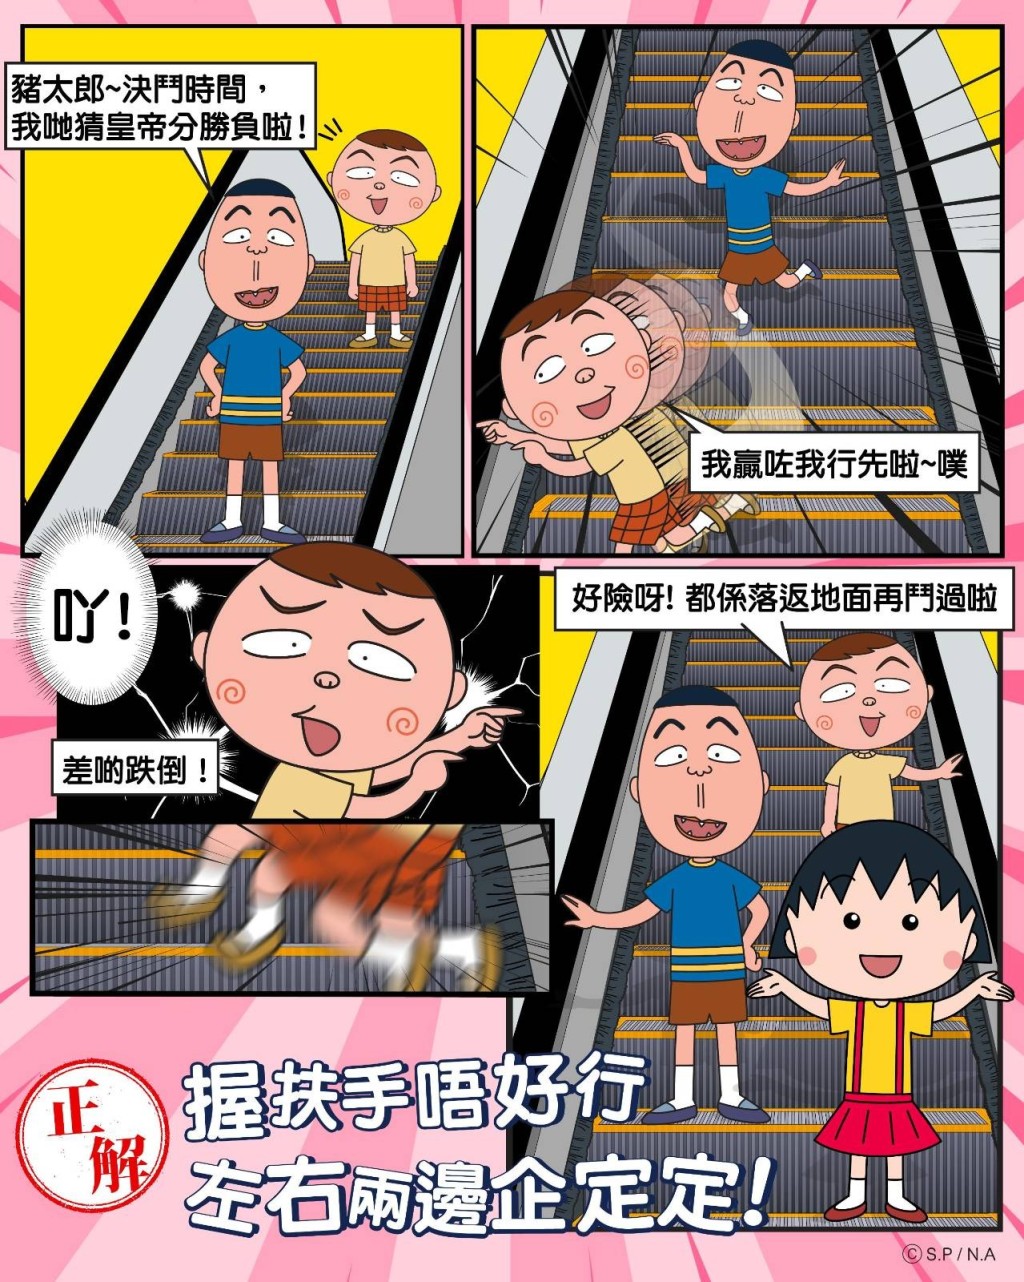 小丸子：記得「握扶手，左右兩邊企定定」，不要在扶手電梯上走動。網圖